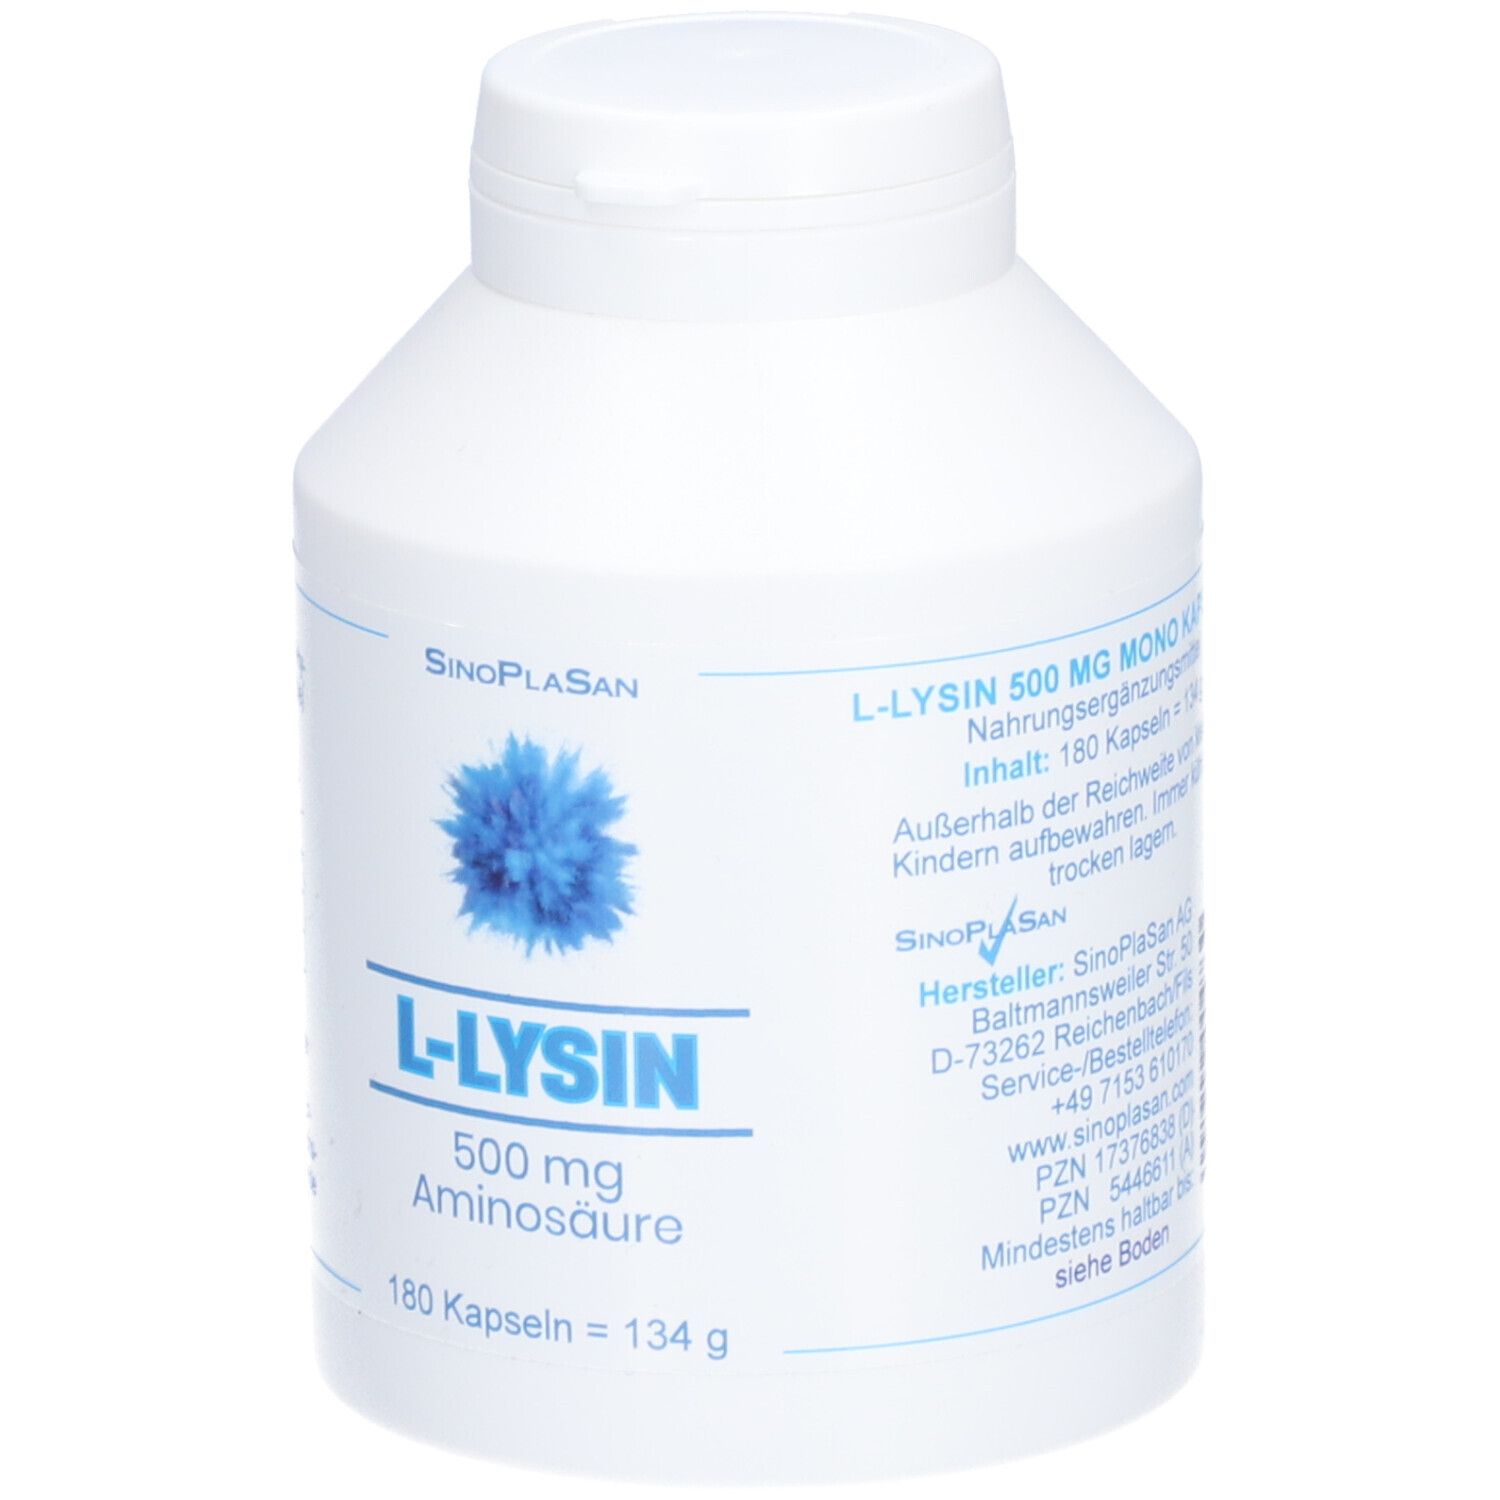 L-Lysin 500 mg Aminosäure